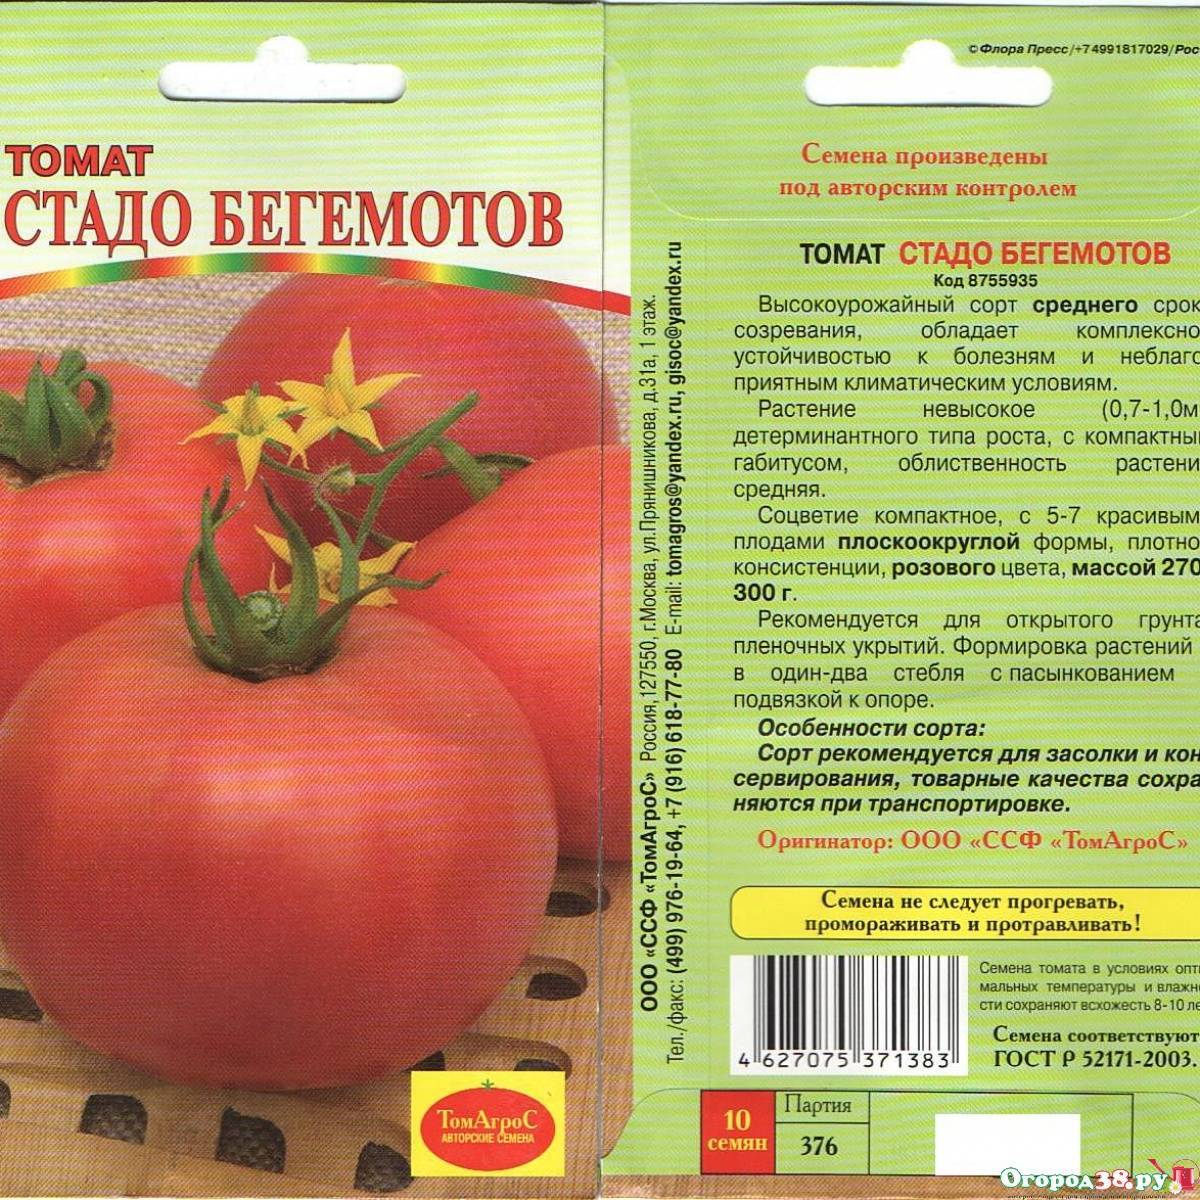 Томат мамонт: характеристика и описание розового сорта, отзывы об урожайности помидоров, фото куста